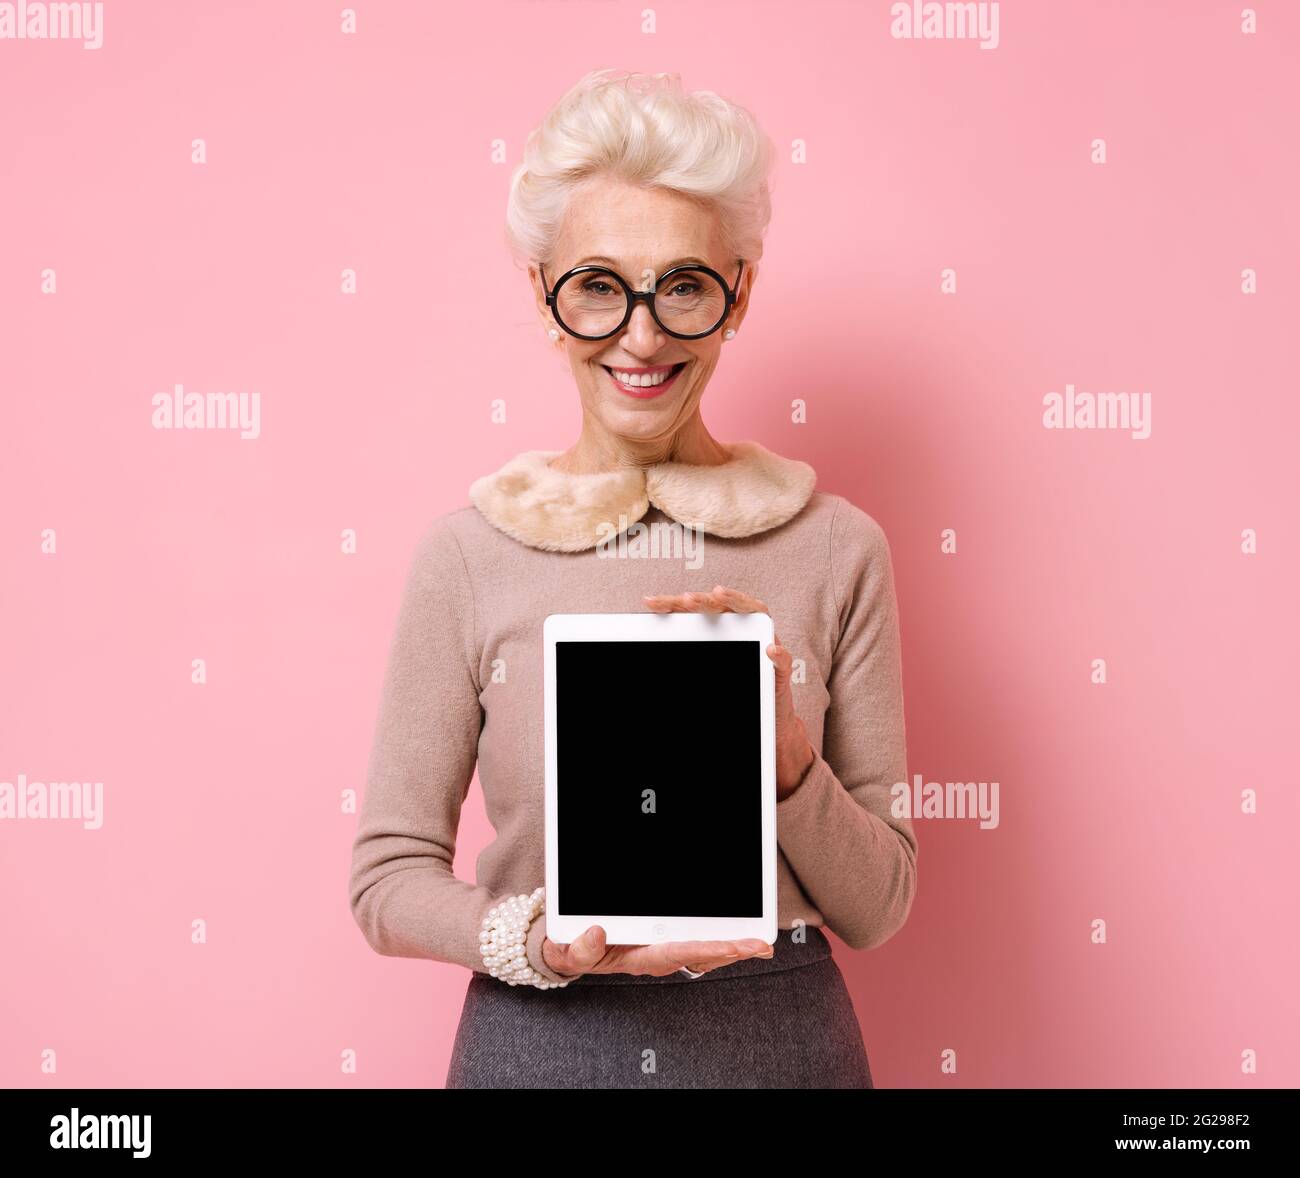 Grand-mère tient une tablette numérique avec un écran vide. Photo d'une femme âgée sur fond rose. Banque D'Images